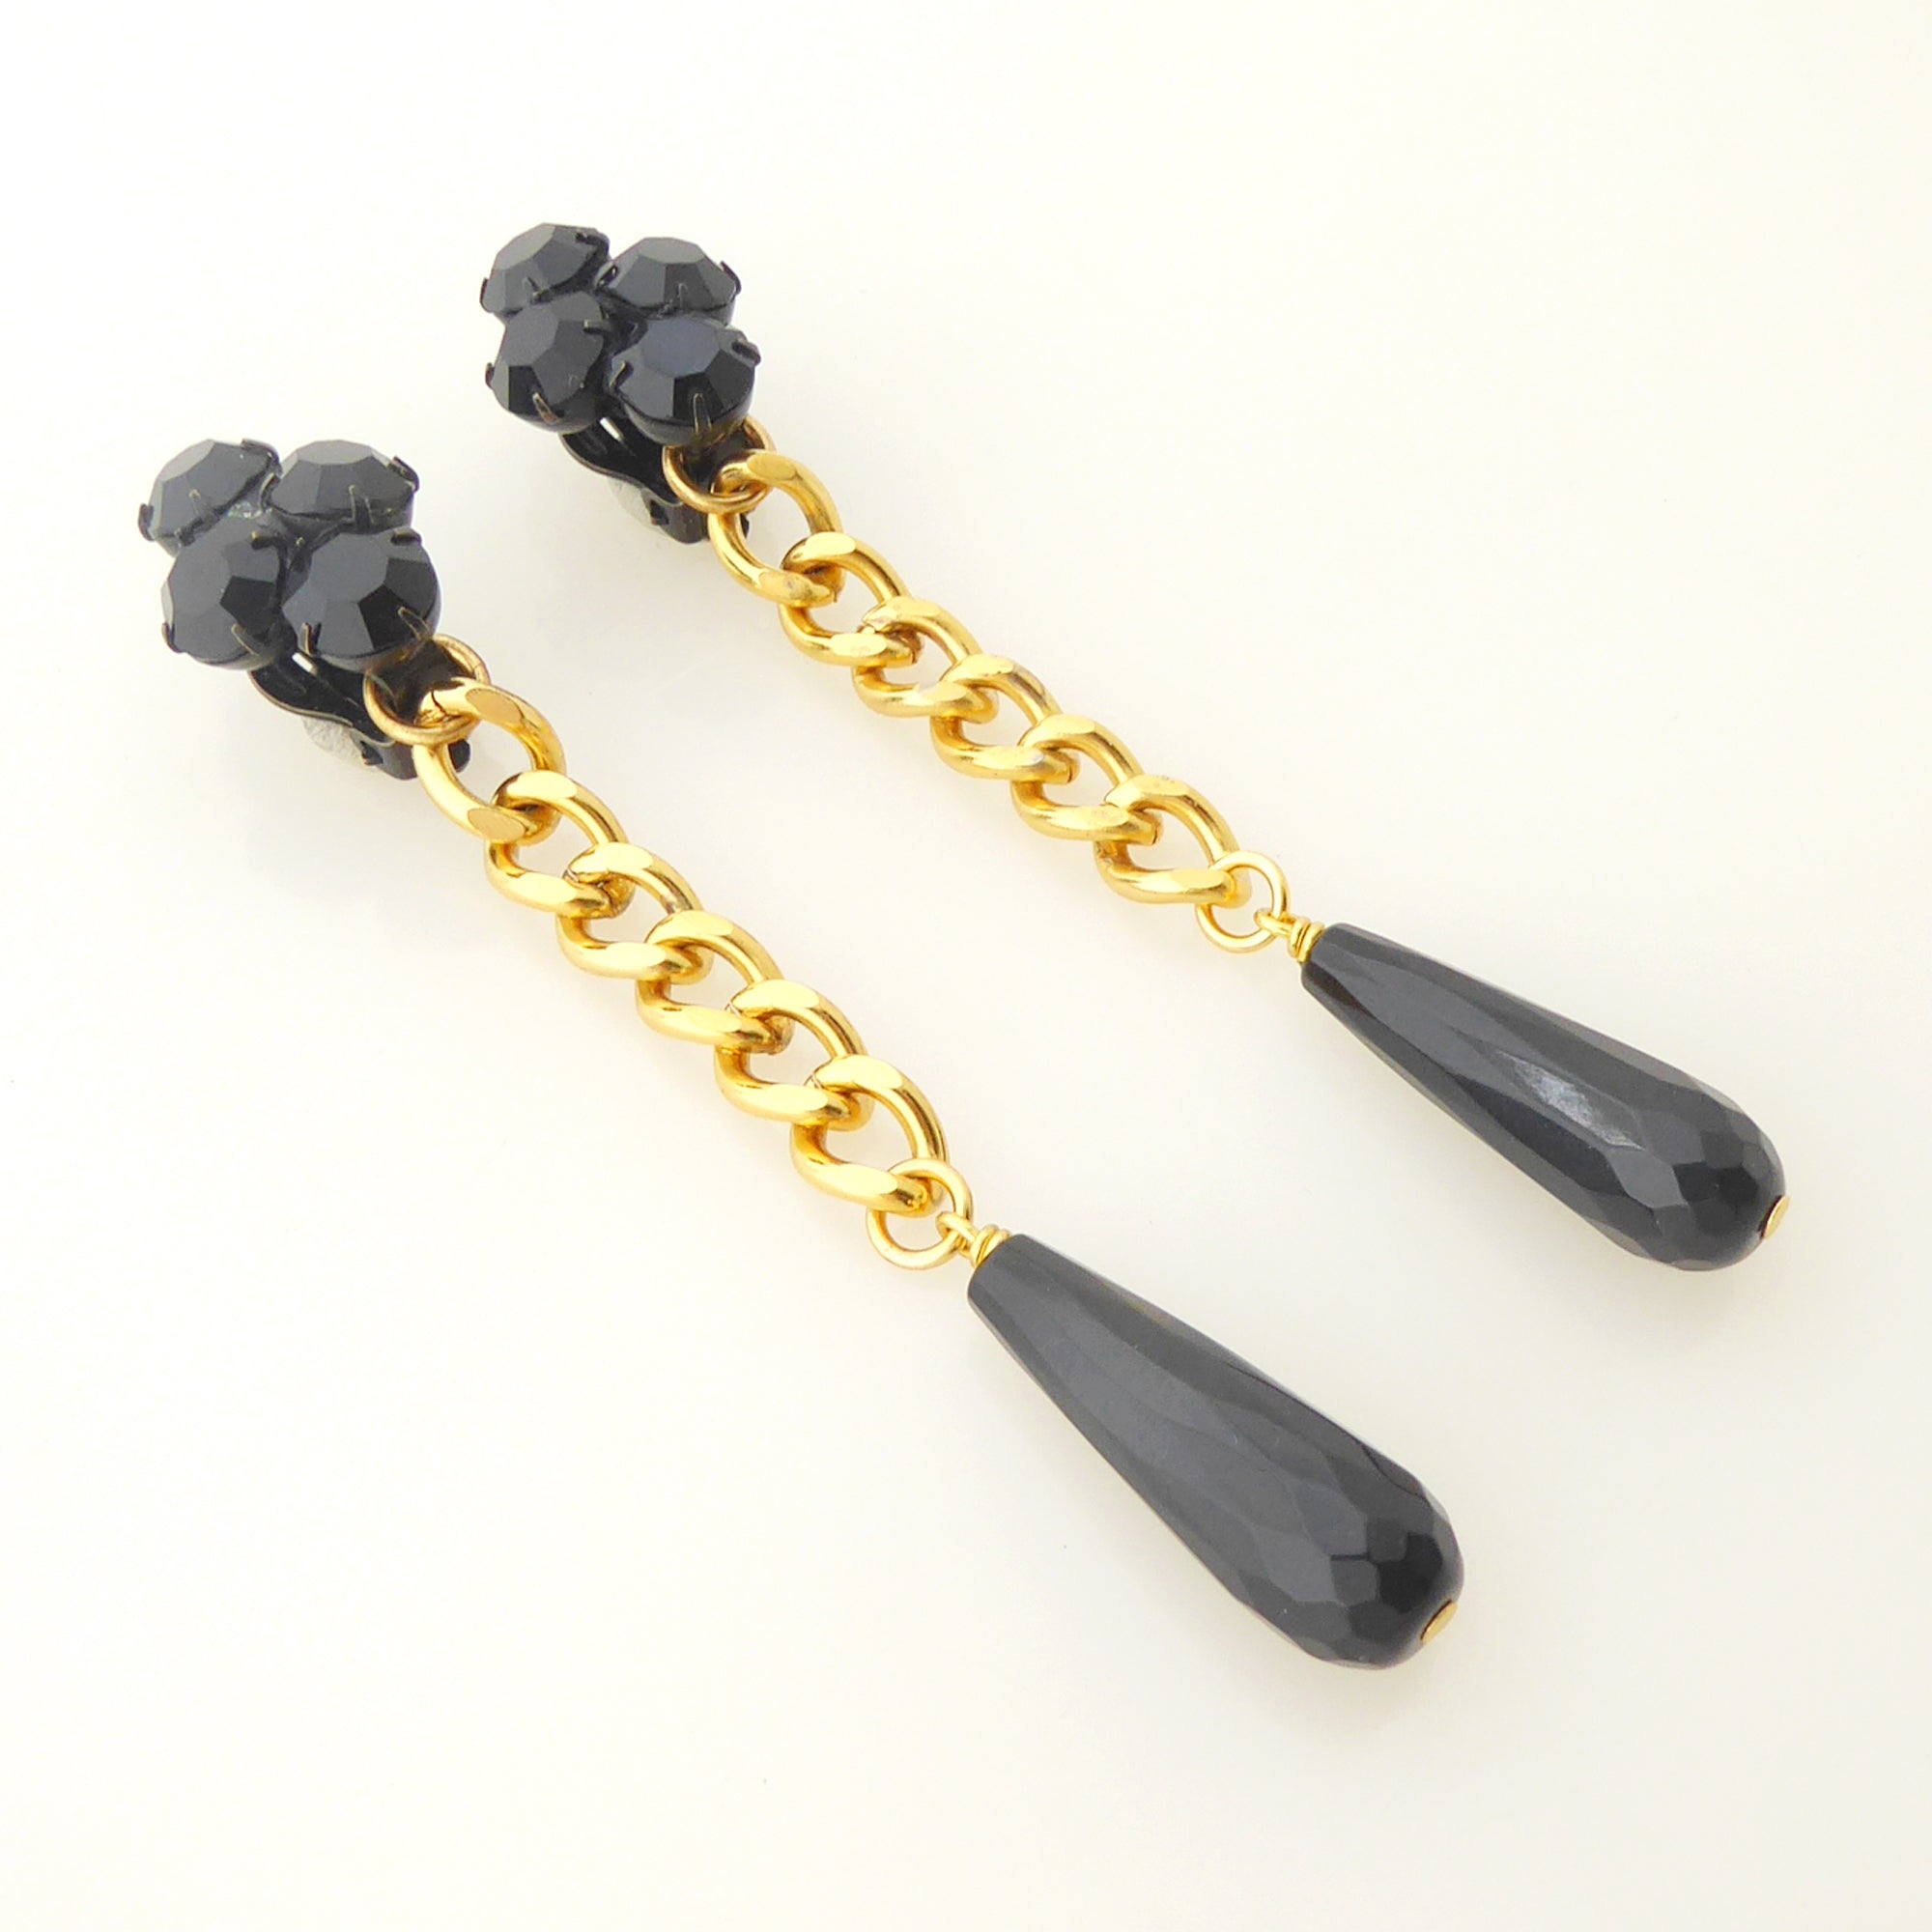    Black onyx teardrop earrings by Jenny Dayco 2